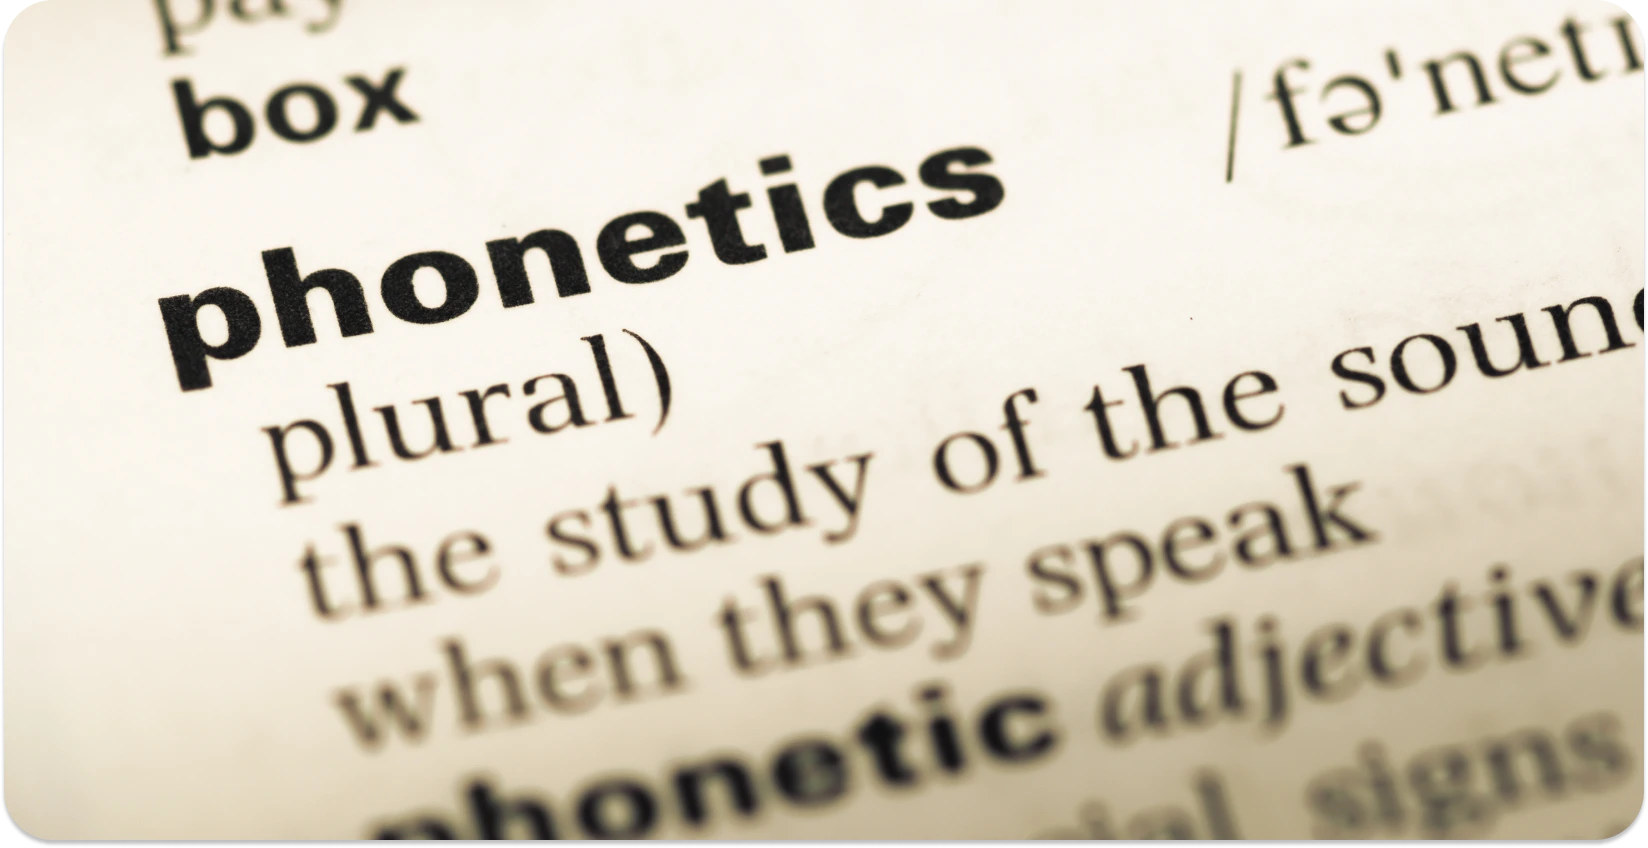 Vista em close-up de um verbete de dicionário para 'fonética', destacando a transcrição de sons.